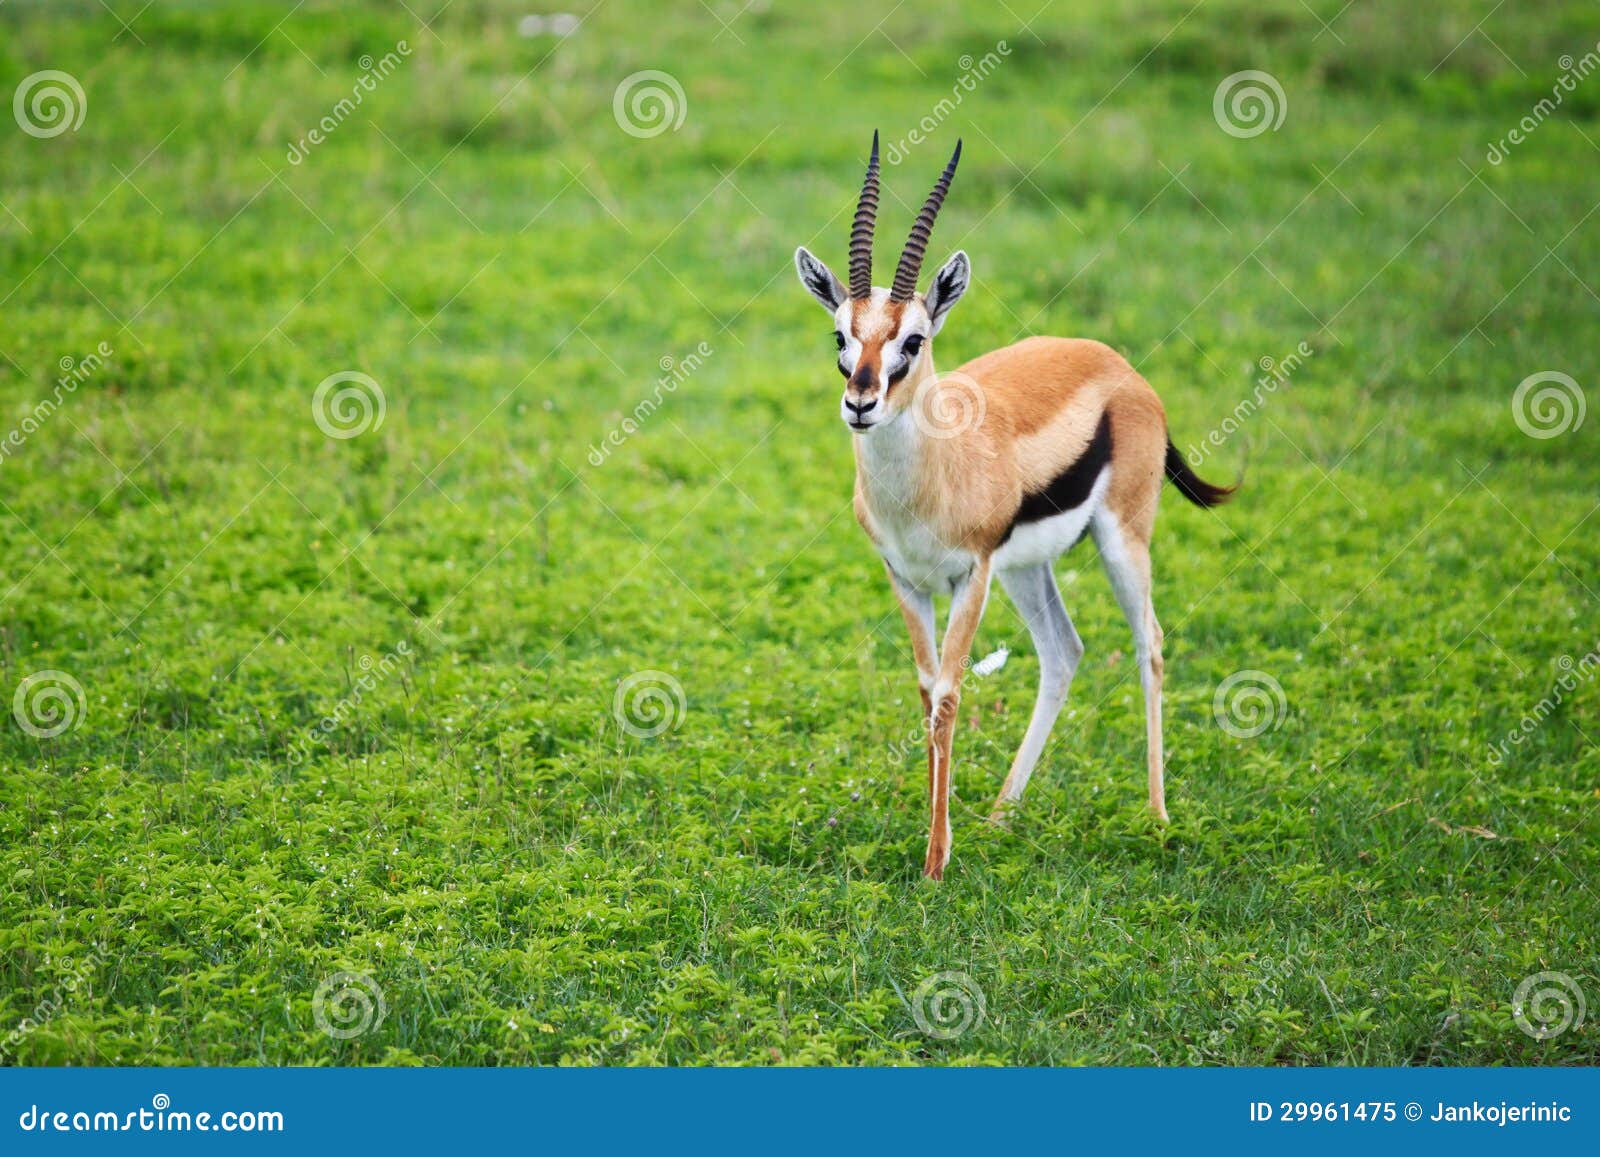 thomson gazelle